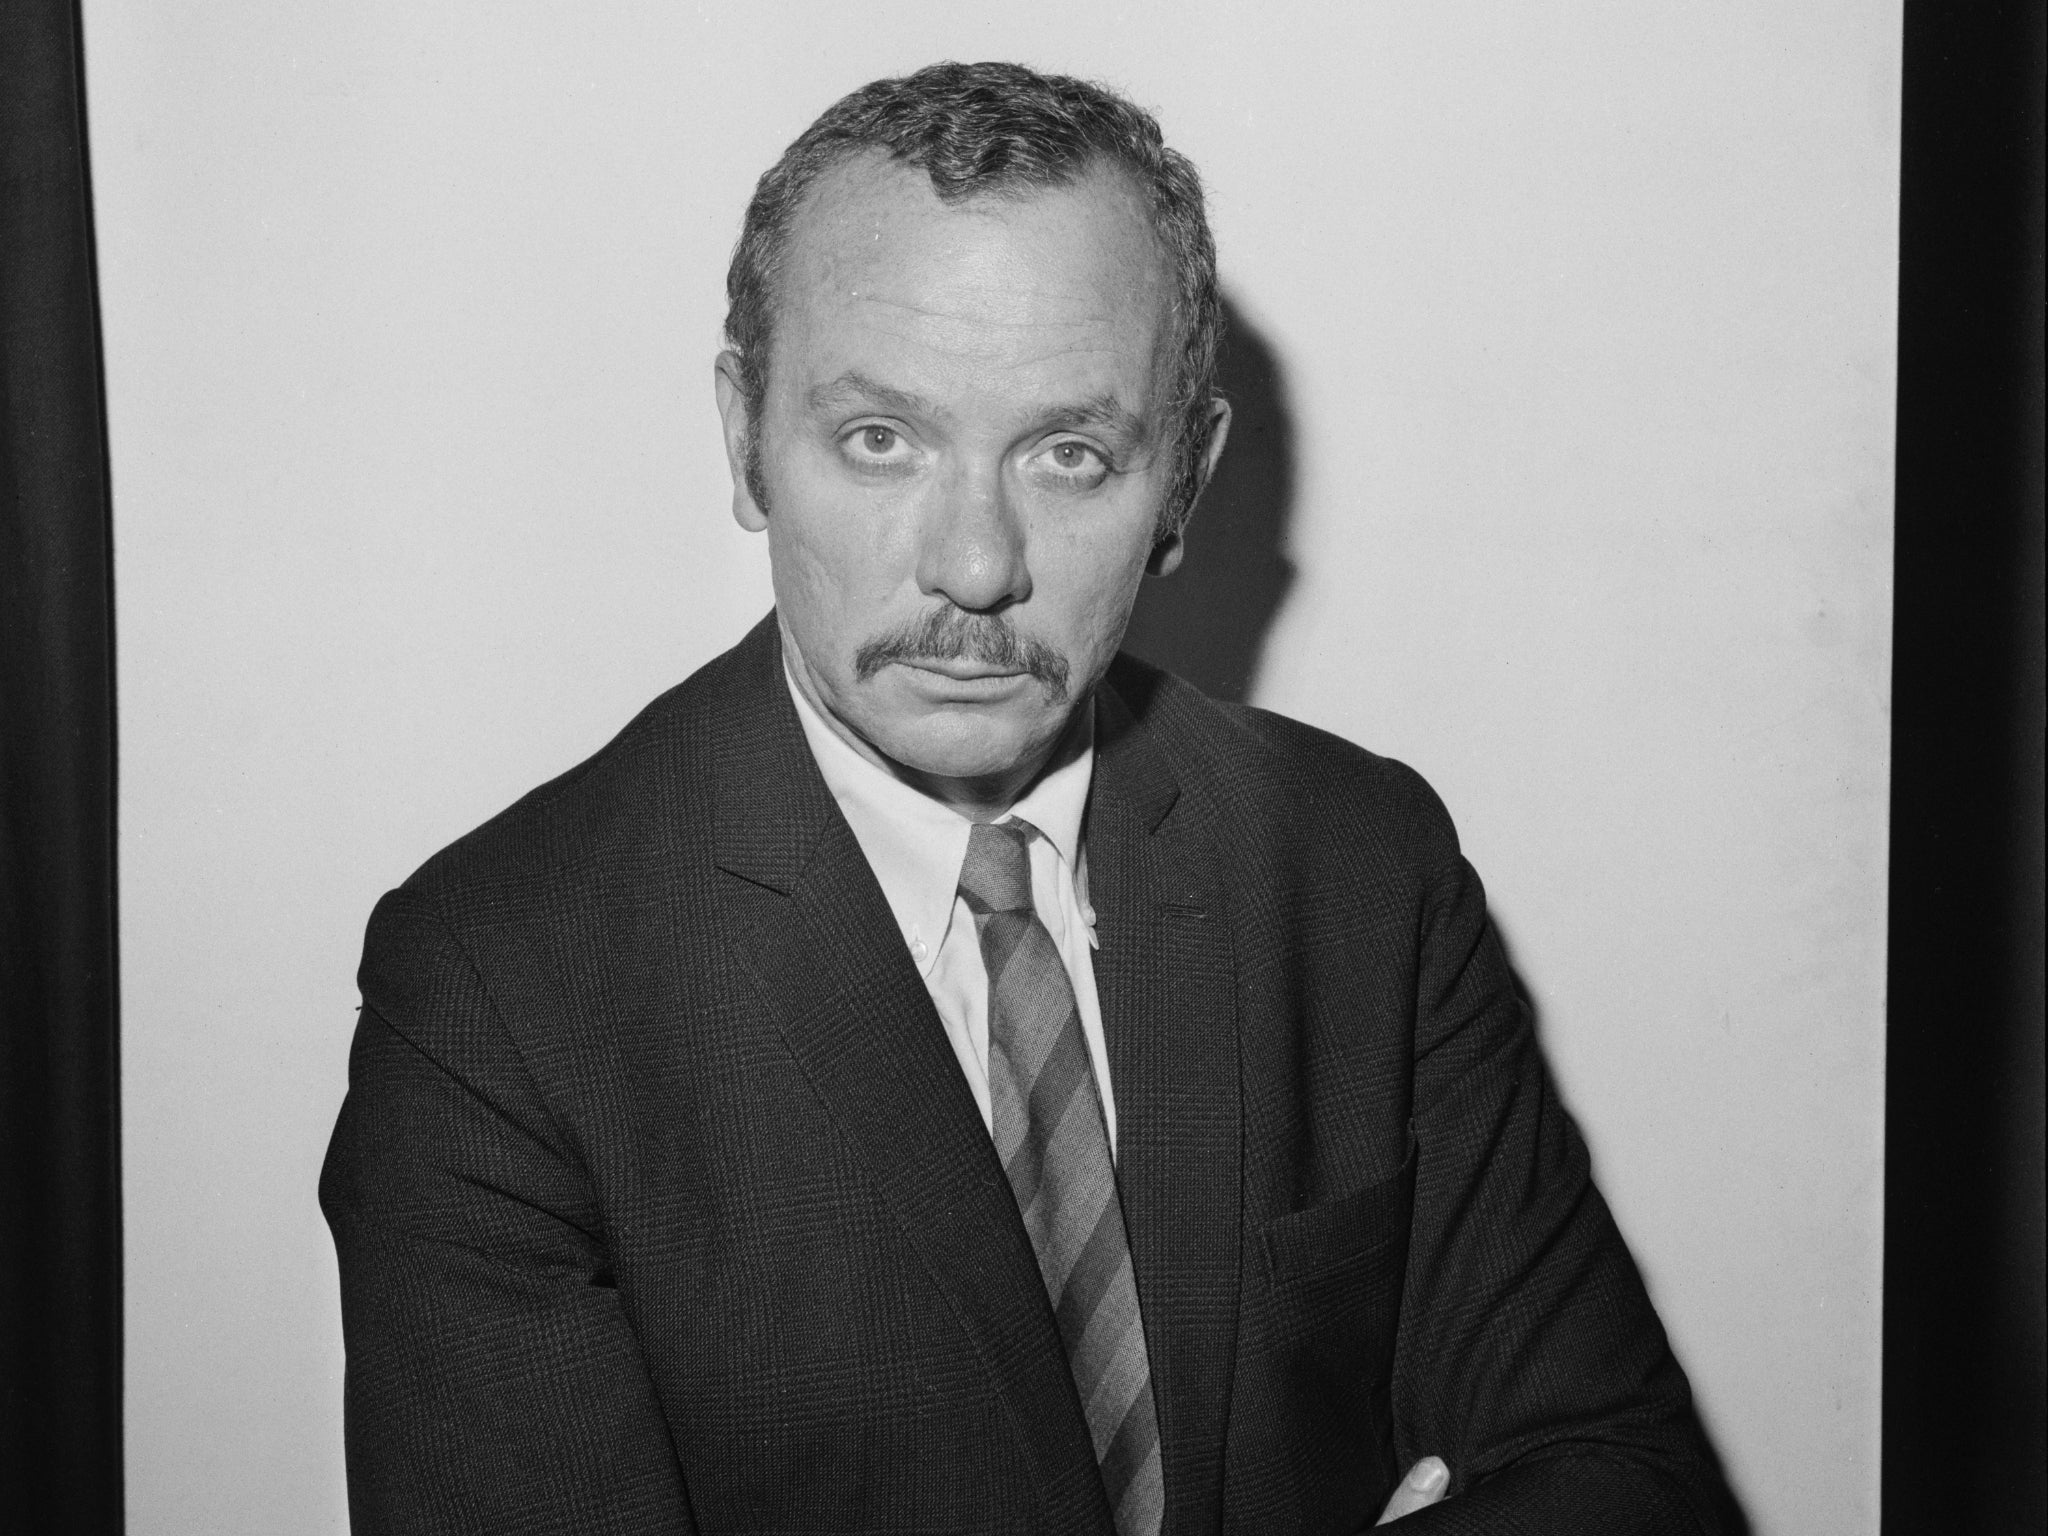 Herbert Kretzmer photographed on 9 November 1968